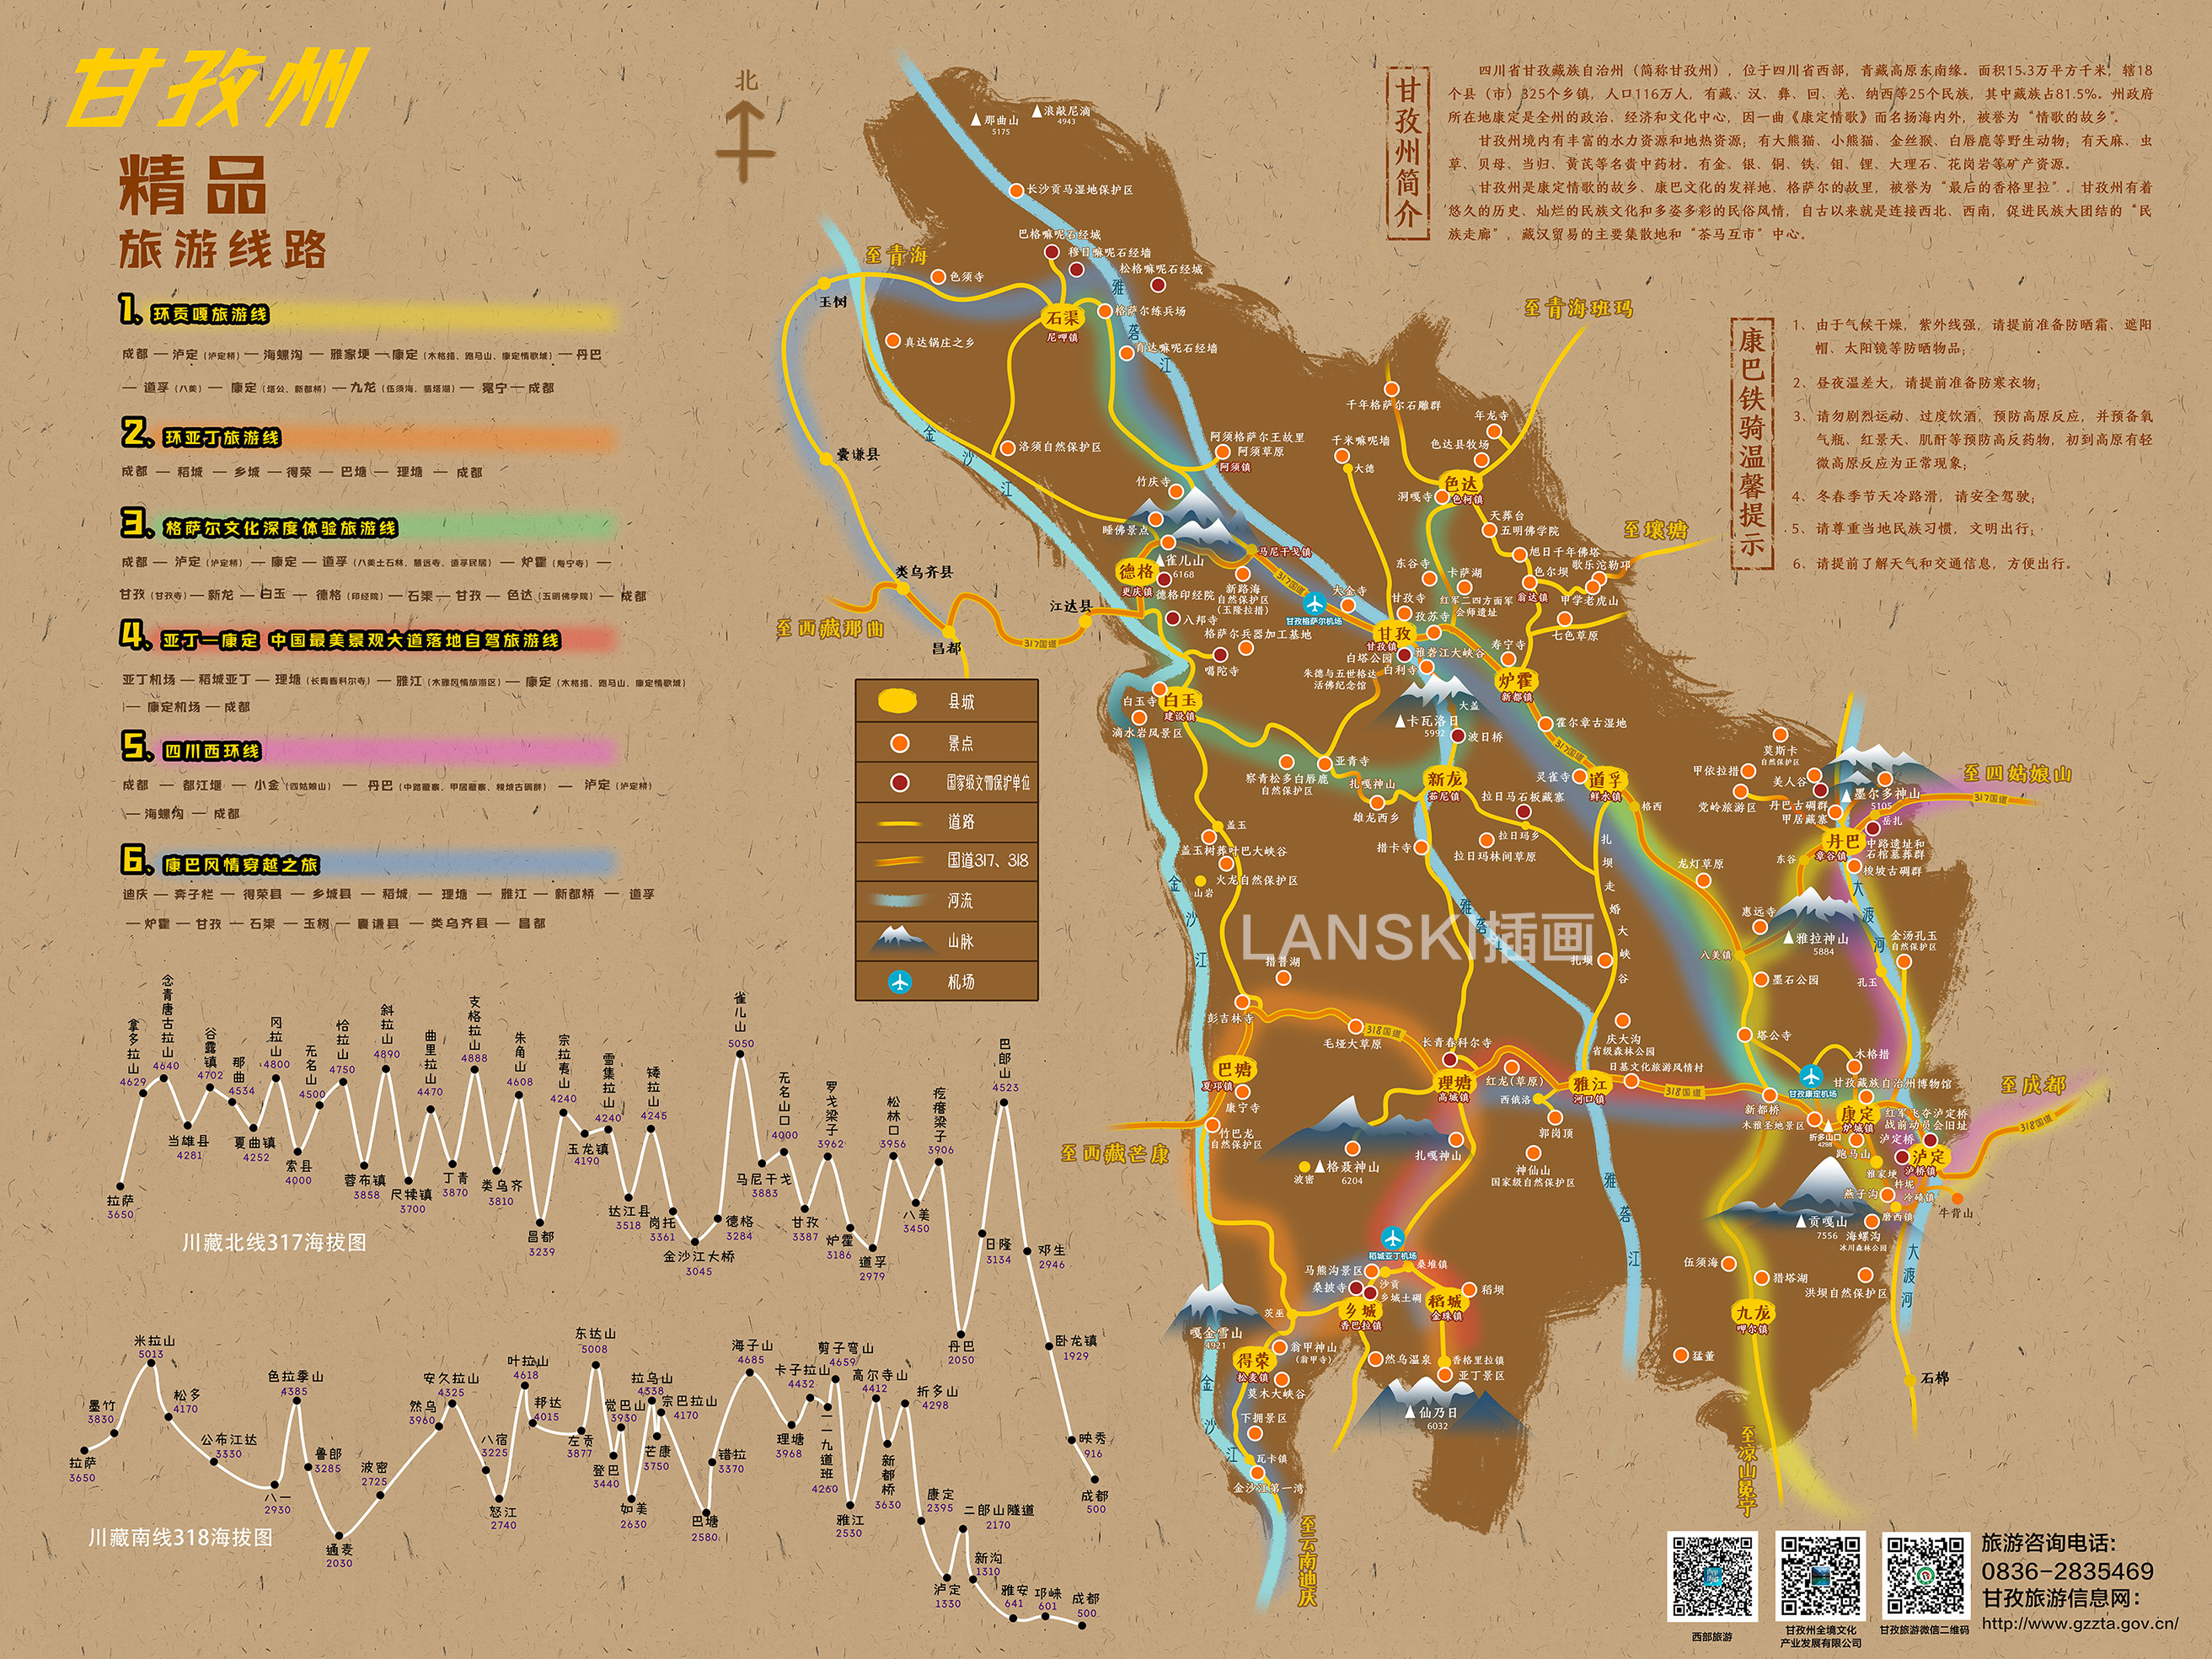 甘孜旅游景点分布图,甘孜行政区域地图,甘孜交通地图等地图查询  地图图片